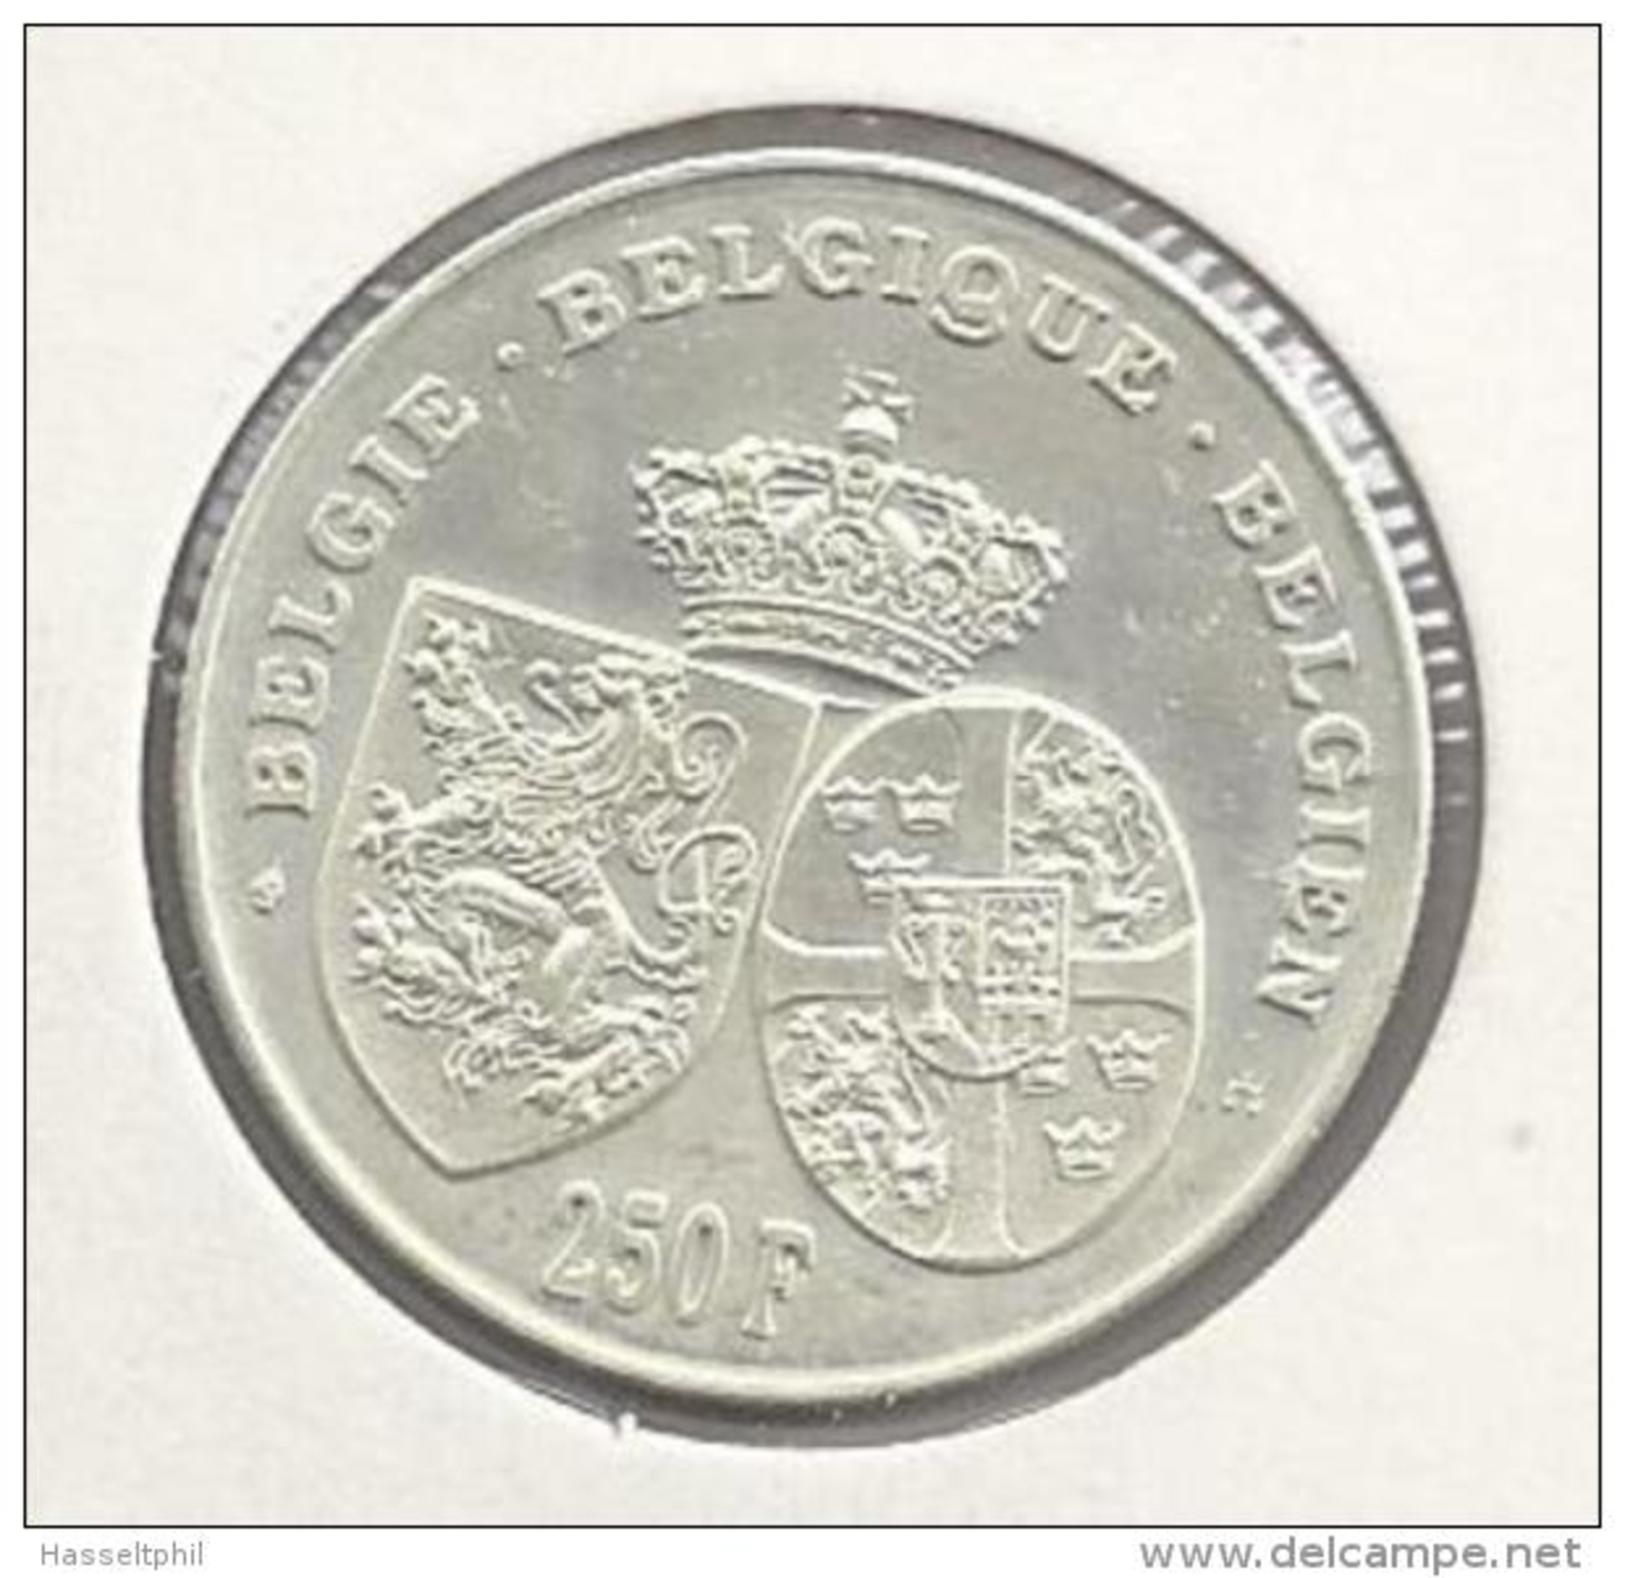 BELGIE - BELGIQUE 250 Frank / 250 Franc Astrid 1995 - 250 Francs